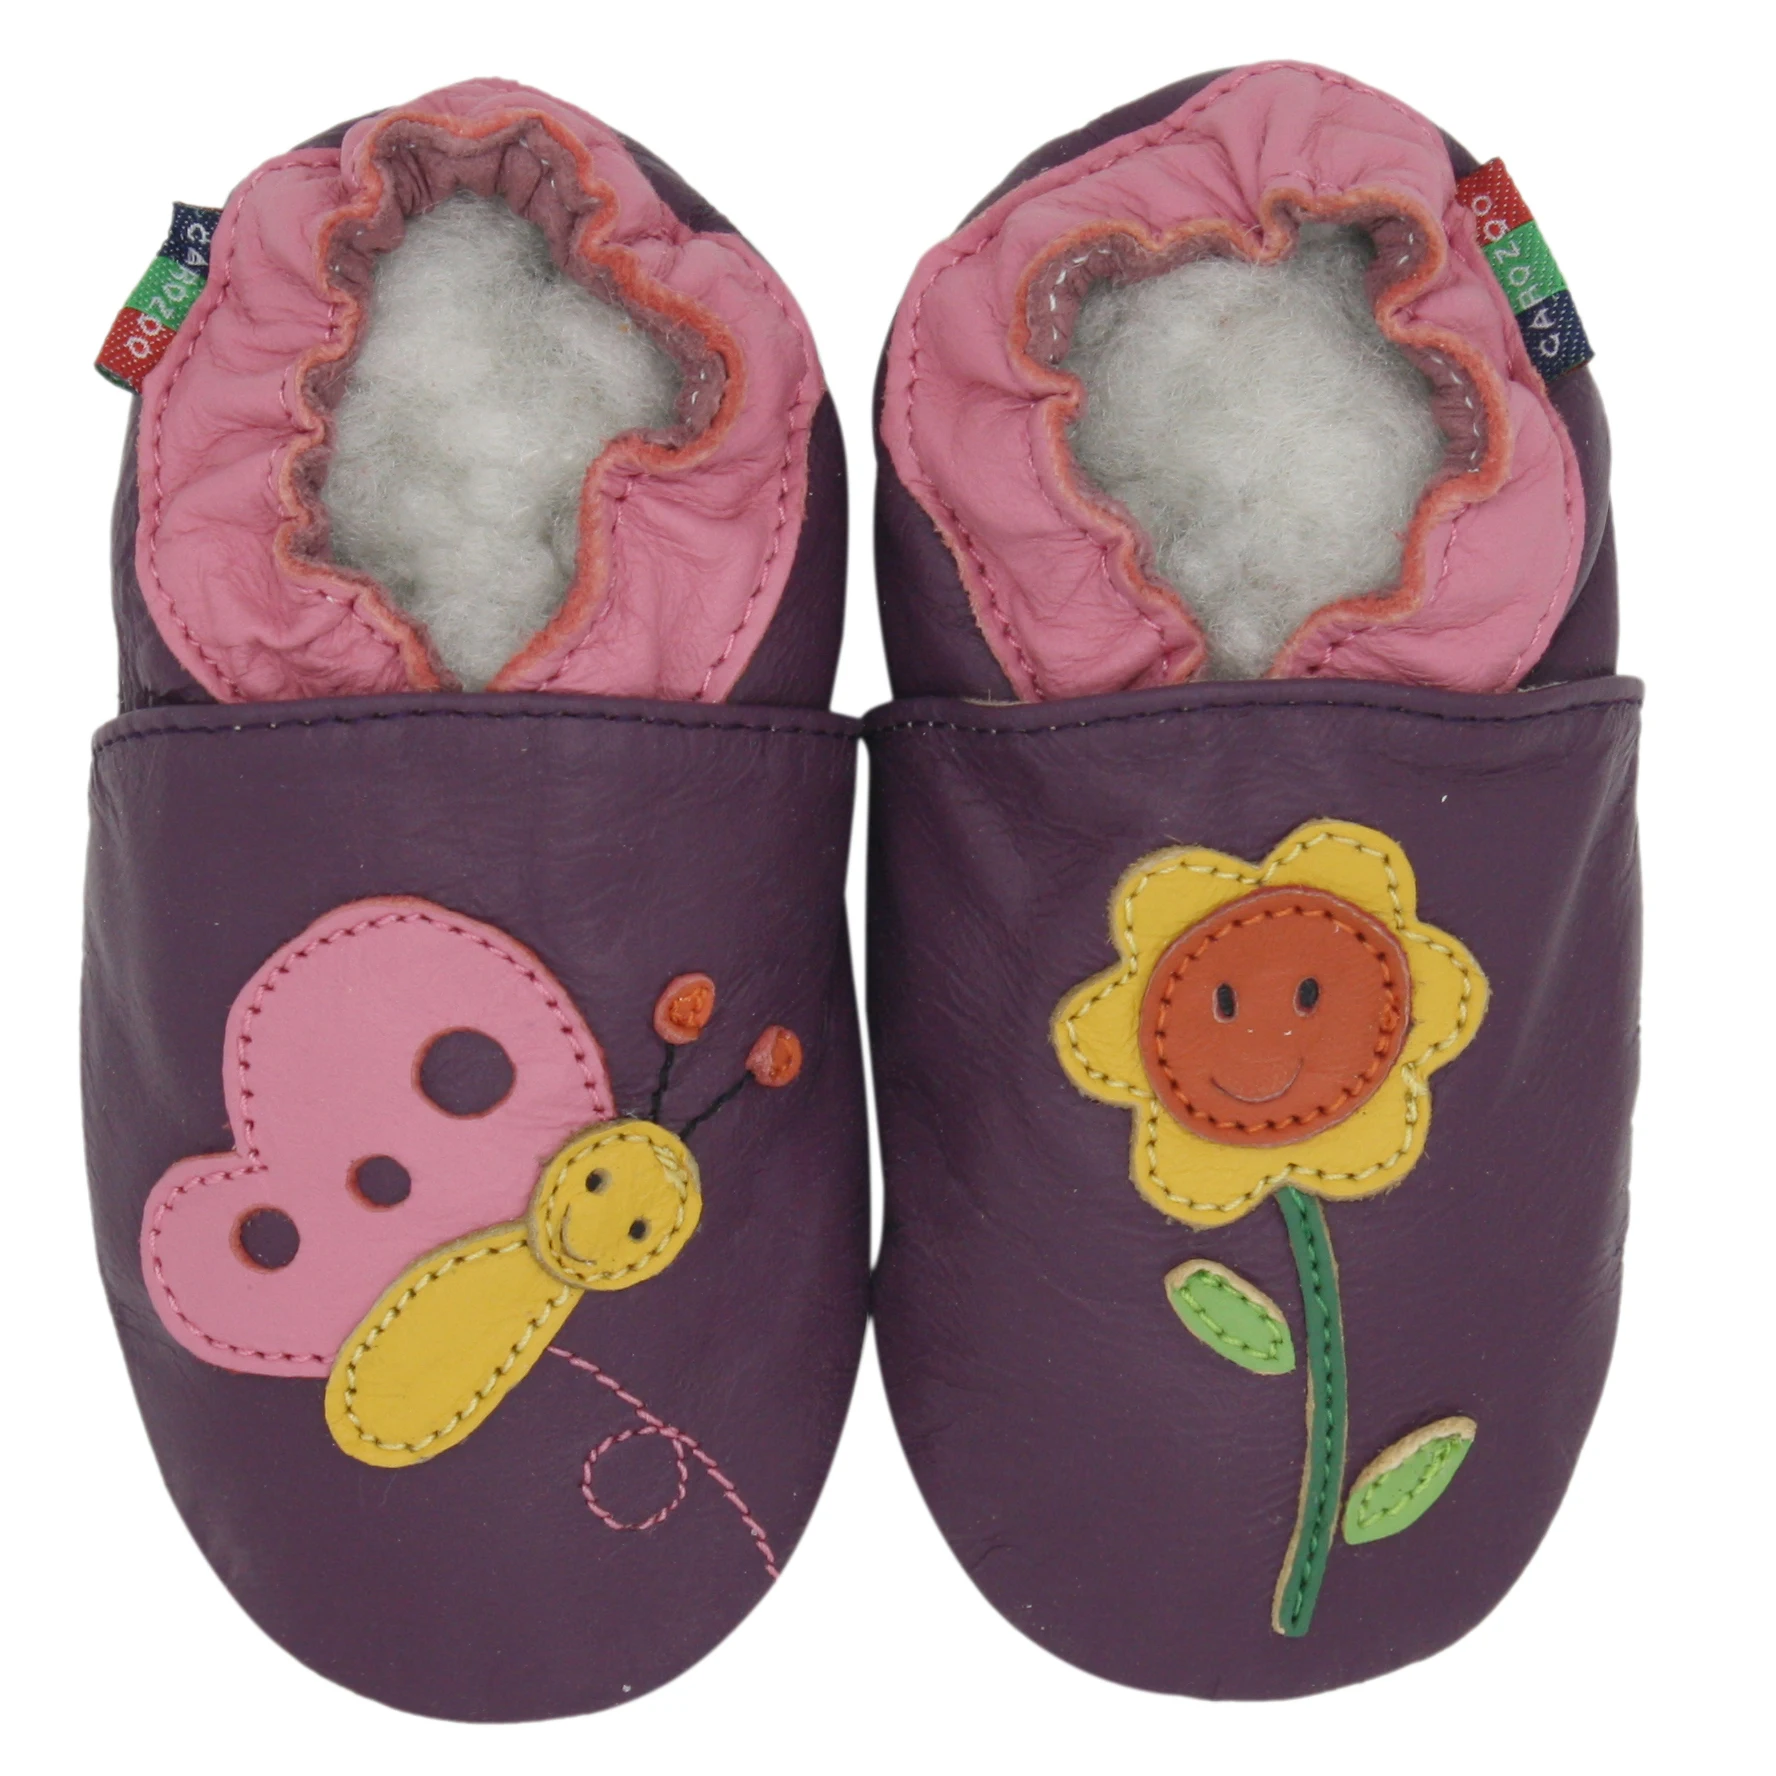 Carozoo miękka skóra owcza dziecięce buty dziewczęce miękkie podeszwy buty dla małego dziecka niemowlę kapcie skarpetki do chodzenia po domu dziecko Unisex buty Bebe